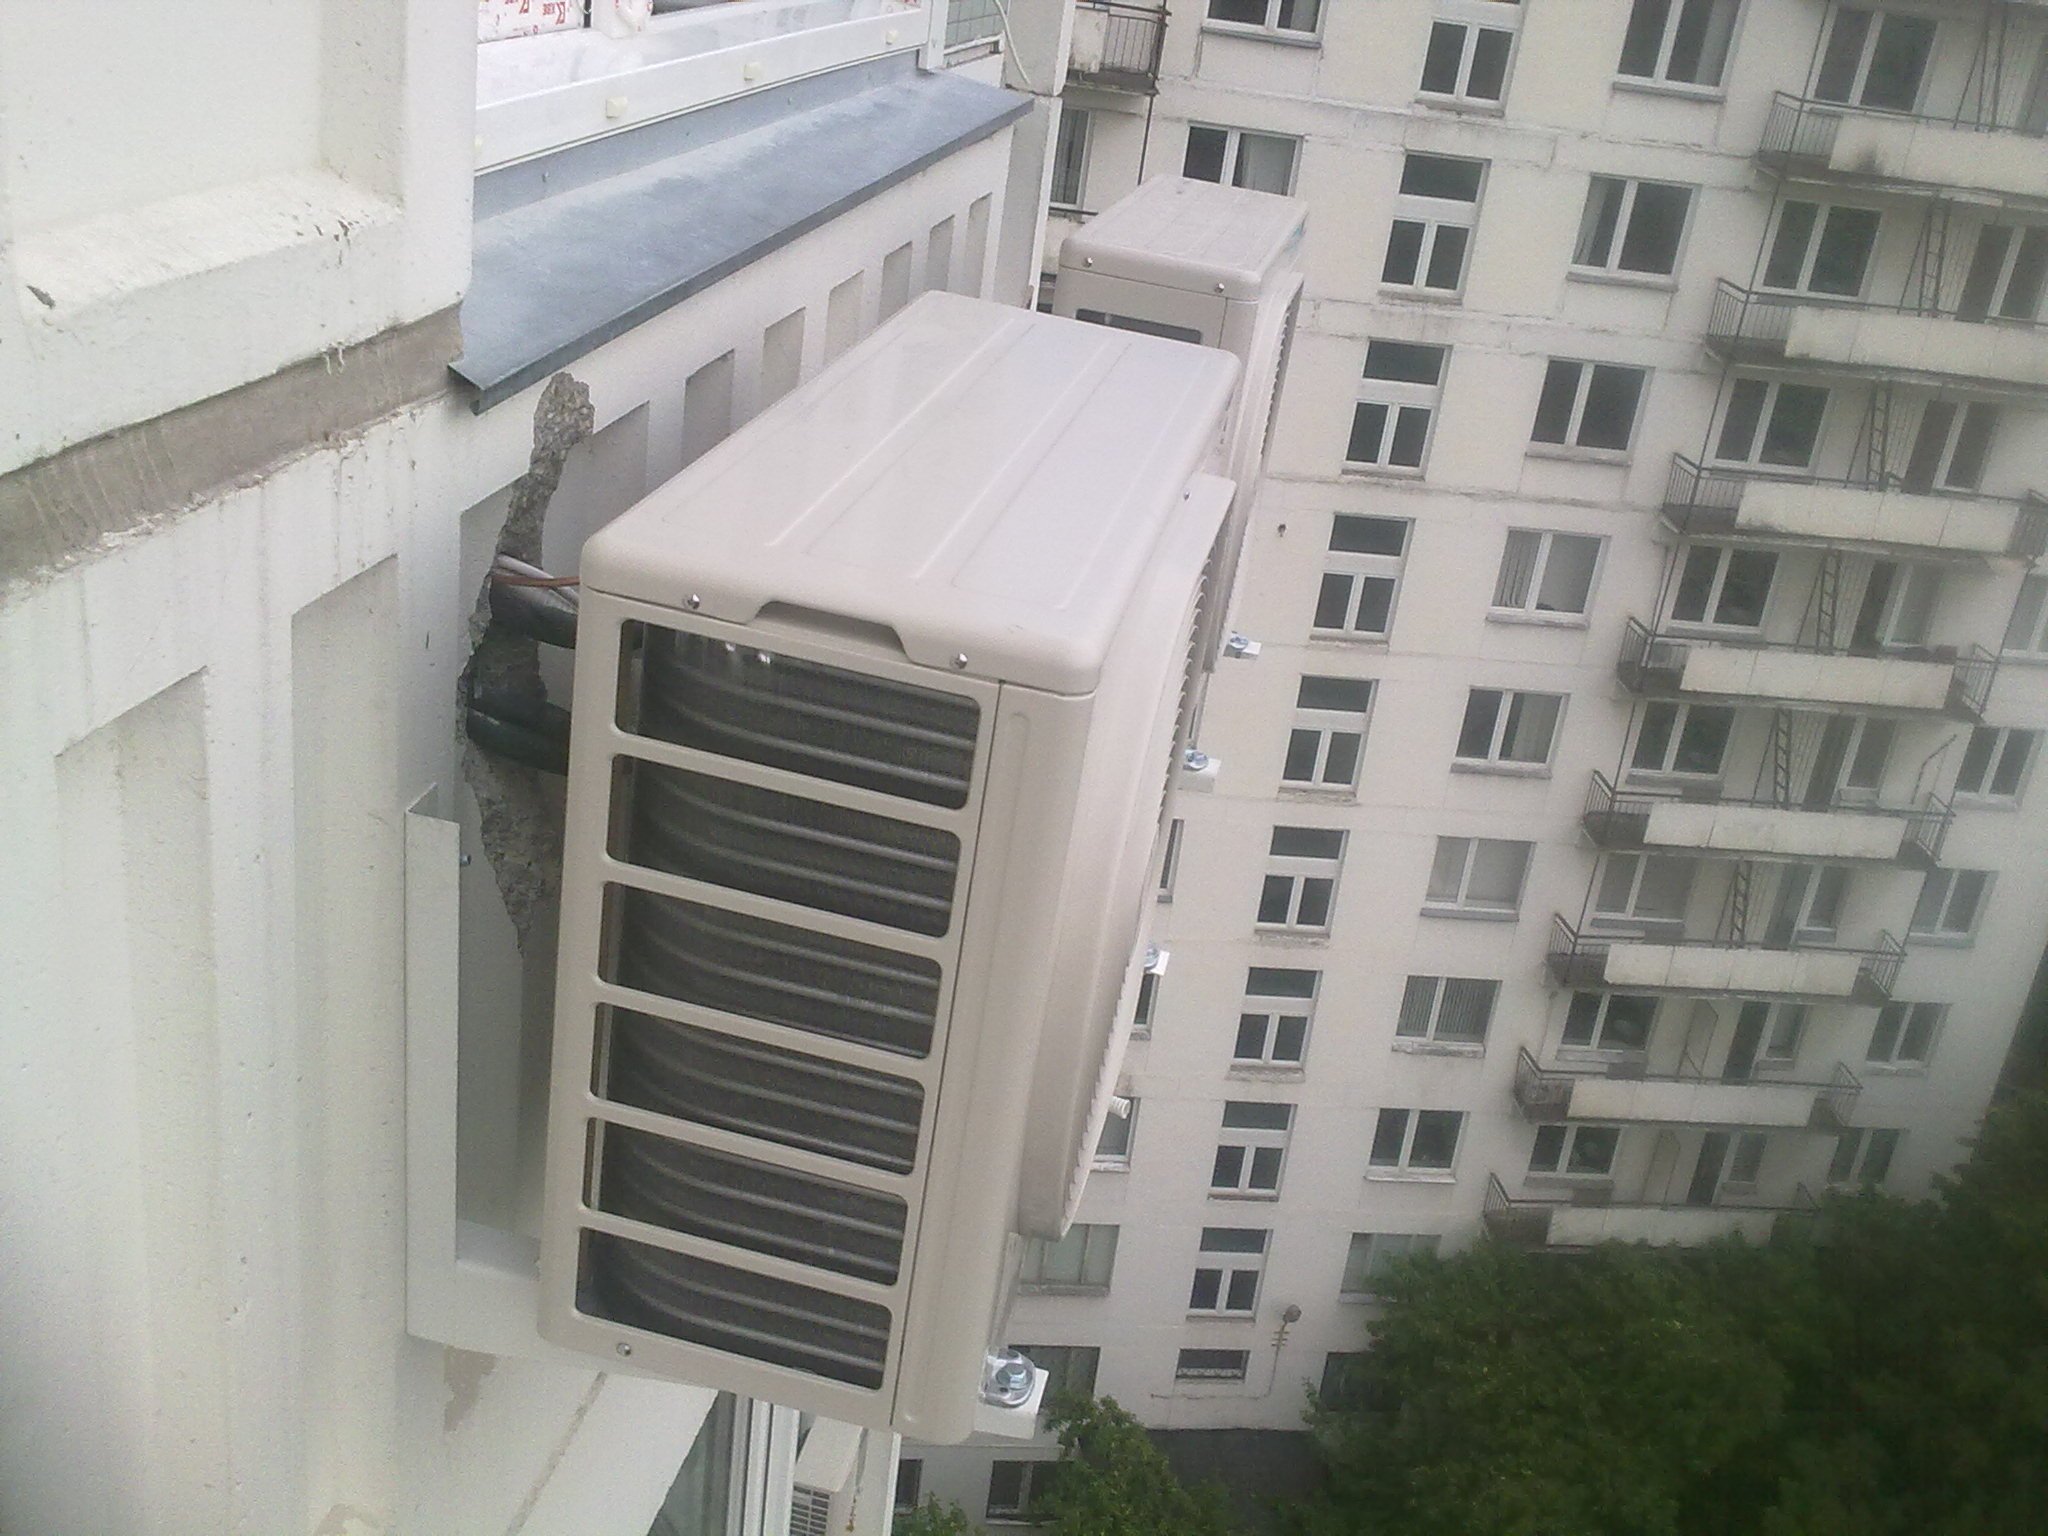 Устанавливают ли кондиционер на балконе. Сплит система на балконе внешний блок. Установленный кондер на балконе. Наружный блок кондиционера на балконе. Кондиционер на фасаде балкона.